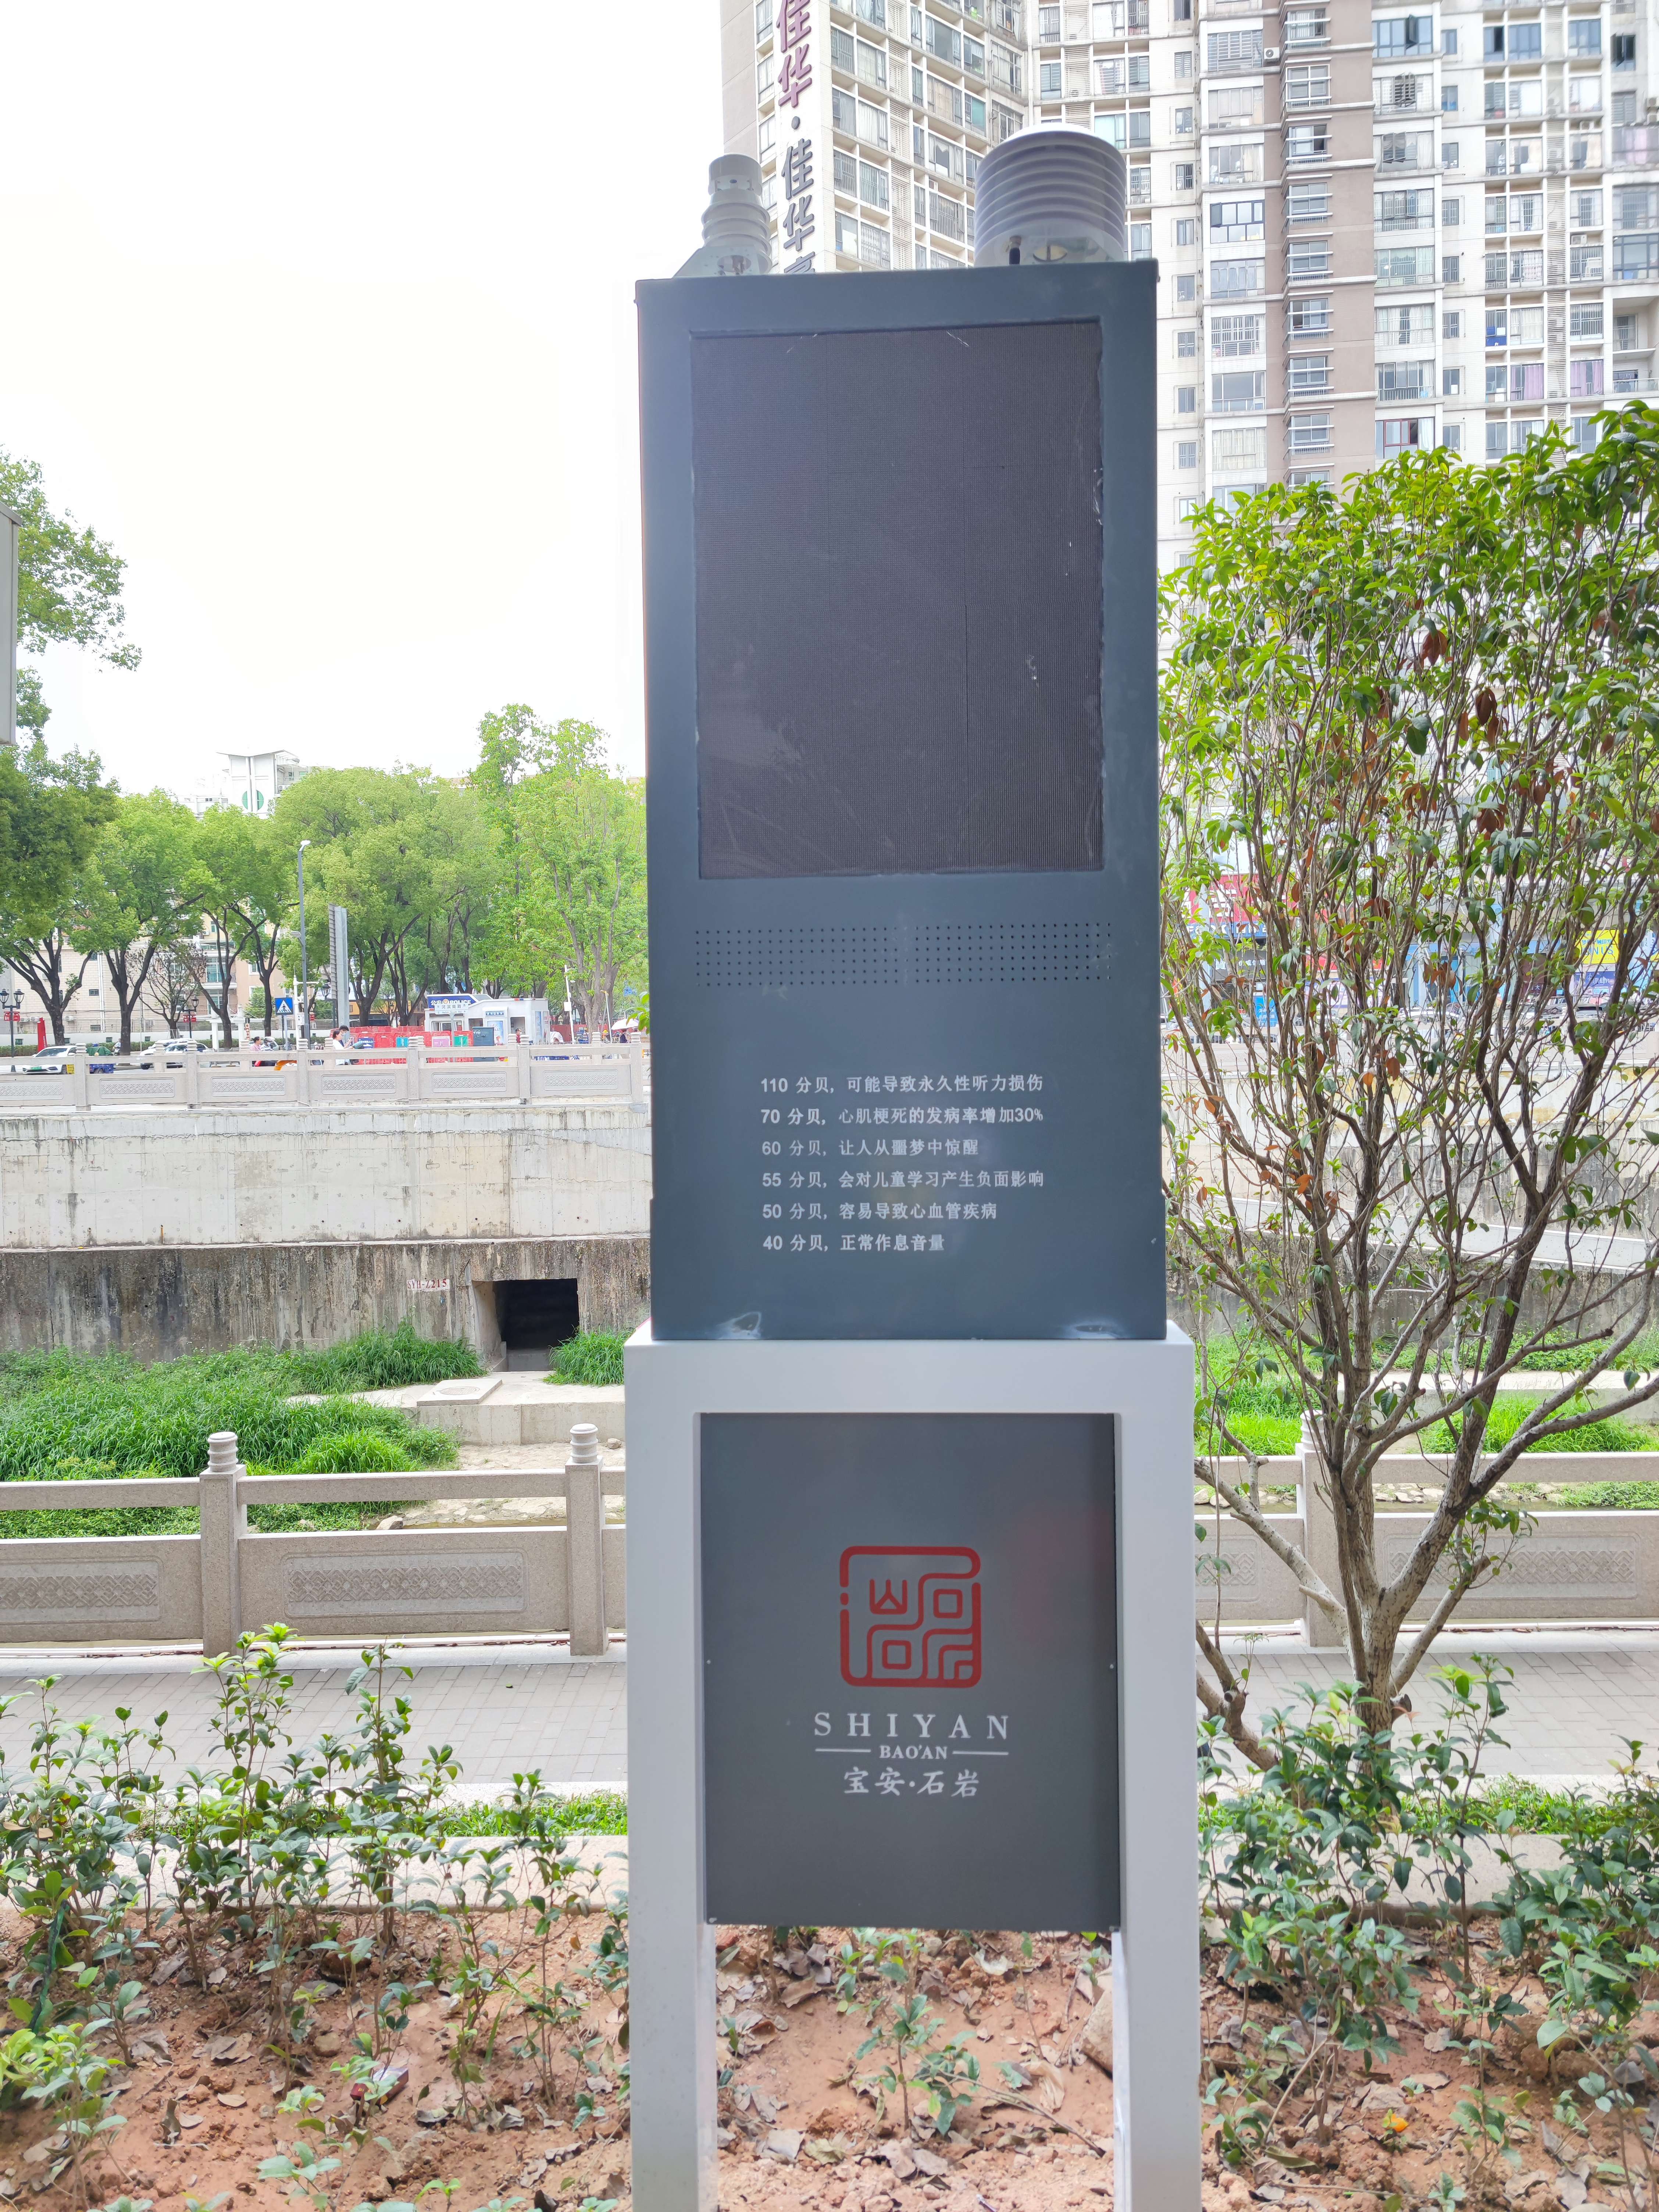 广州全天候噪声超标喊话系统云平台管理  娱乐场所噪声超标喊话系统